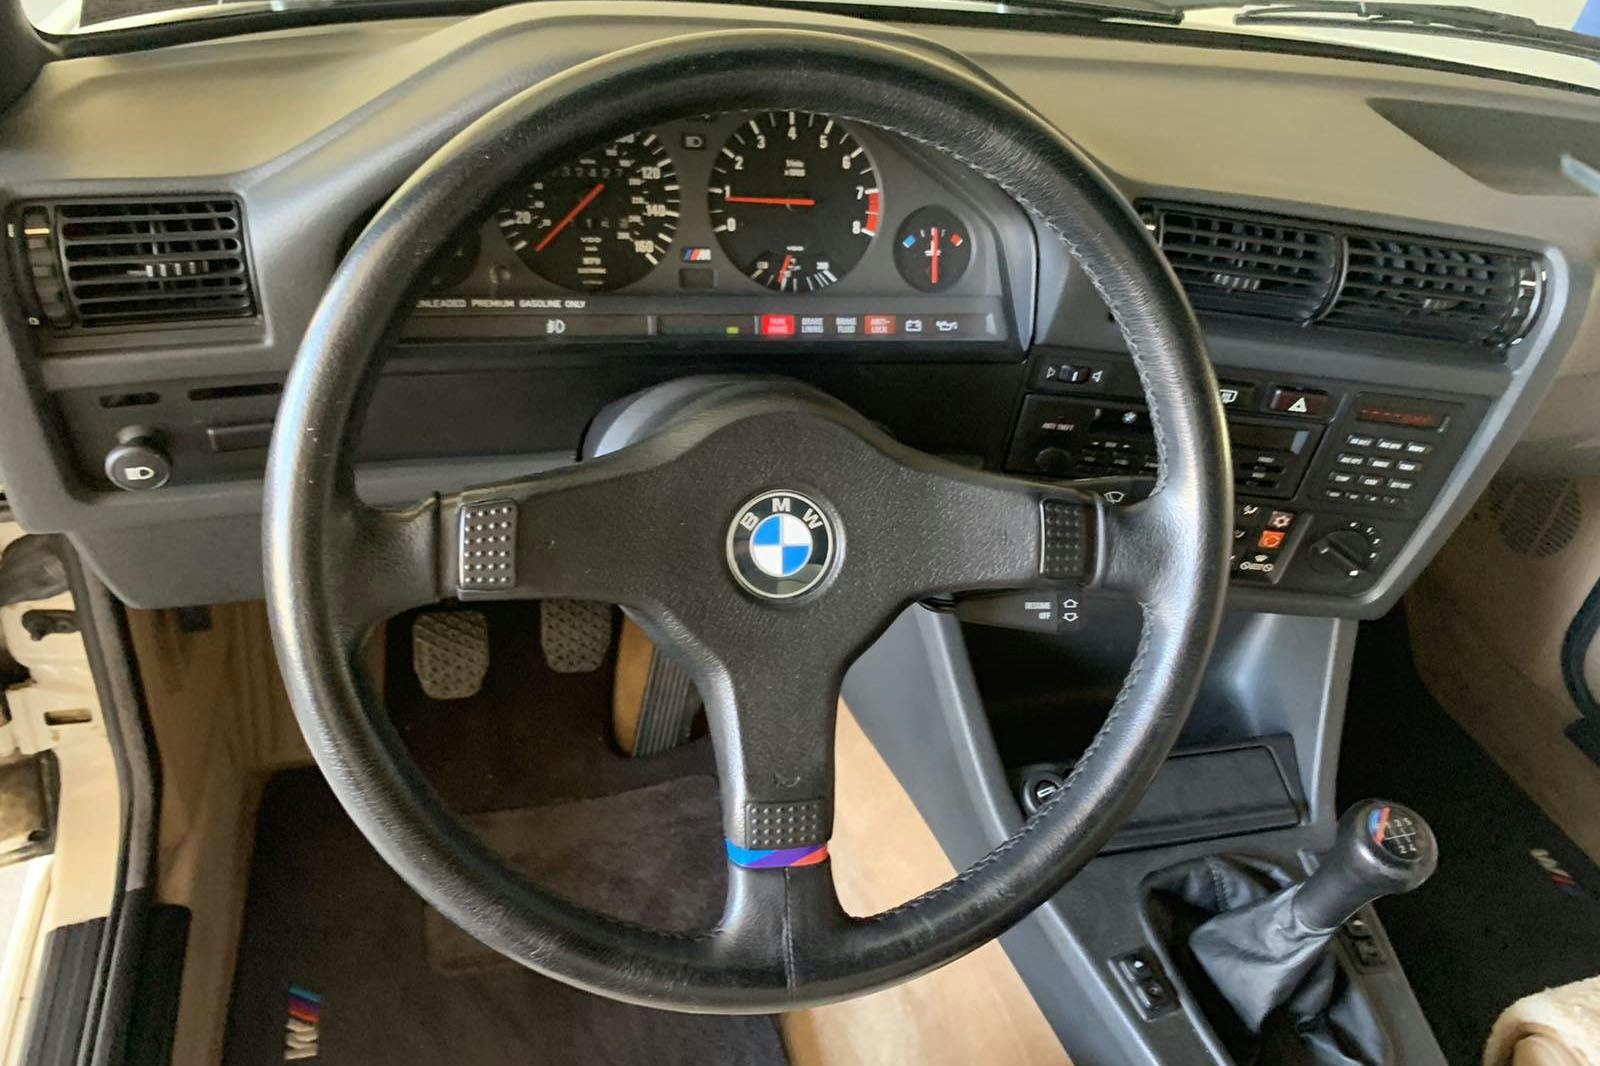 Paul Walker 1988 M3 interior steering wheel